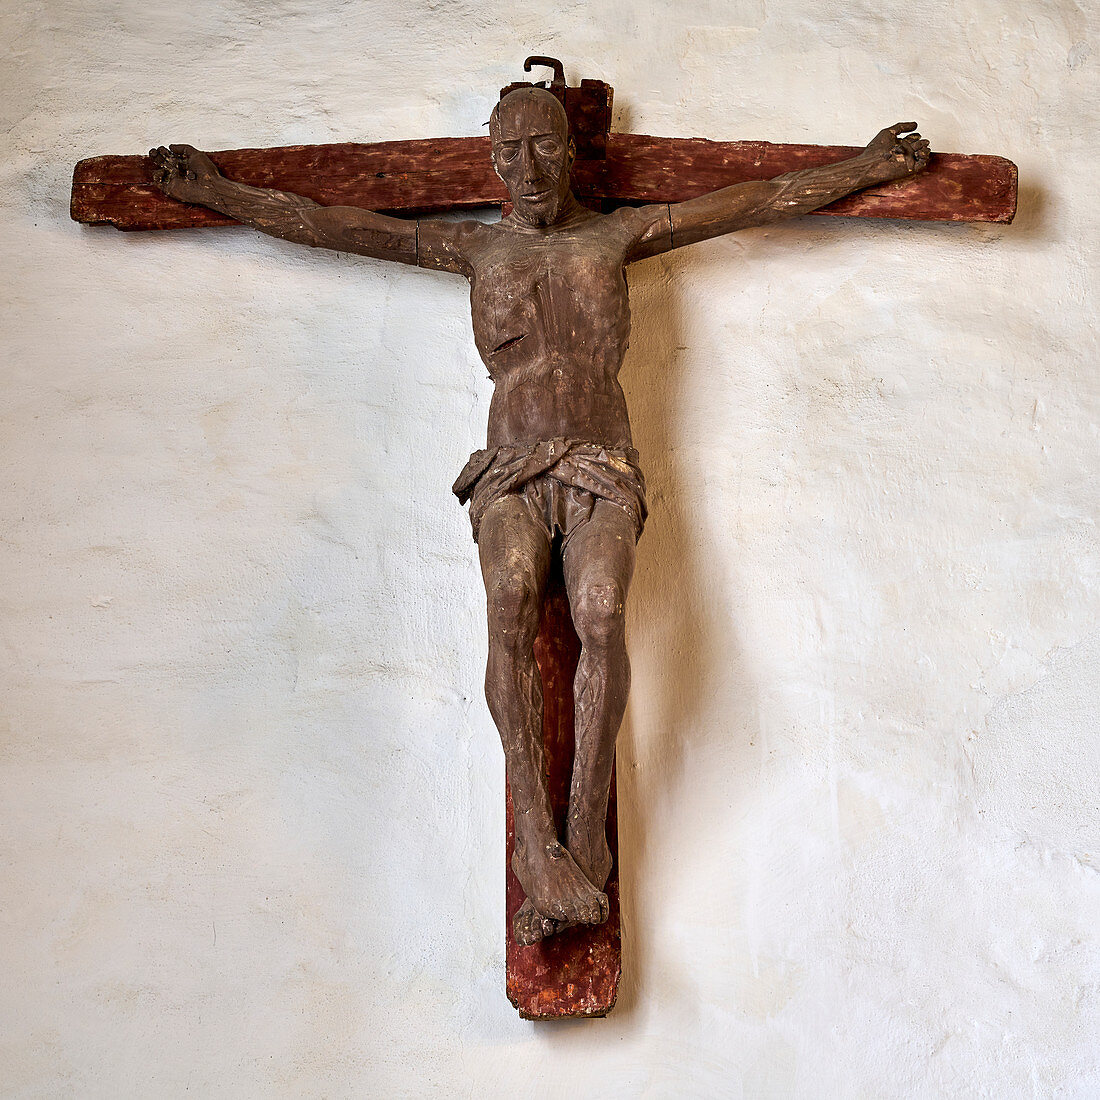 Holzkreuz in der St. Urbanus Kirche Dorum, Niedersachsen, Deutschland